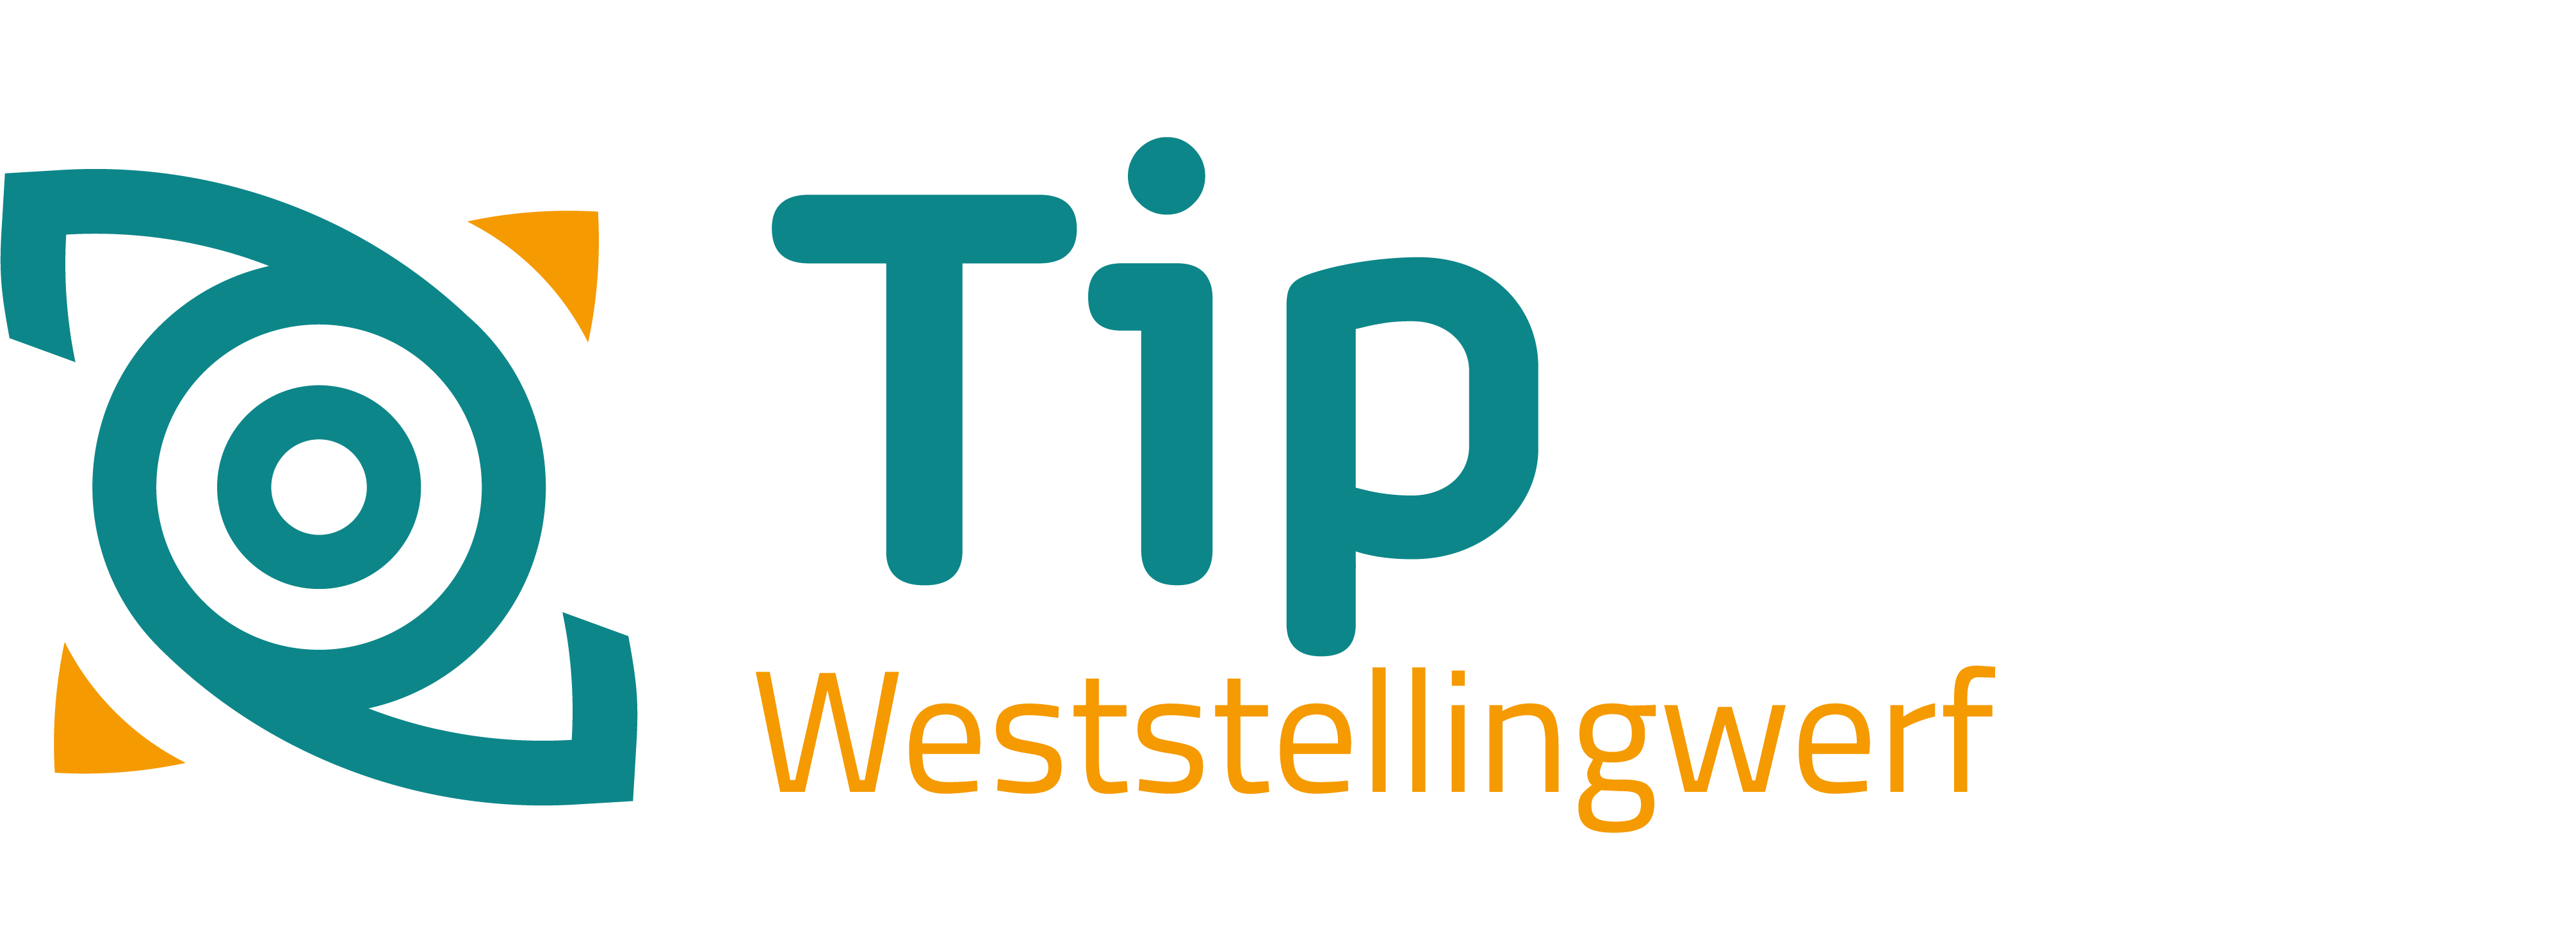 TipWeststellingwerf